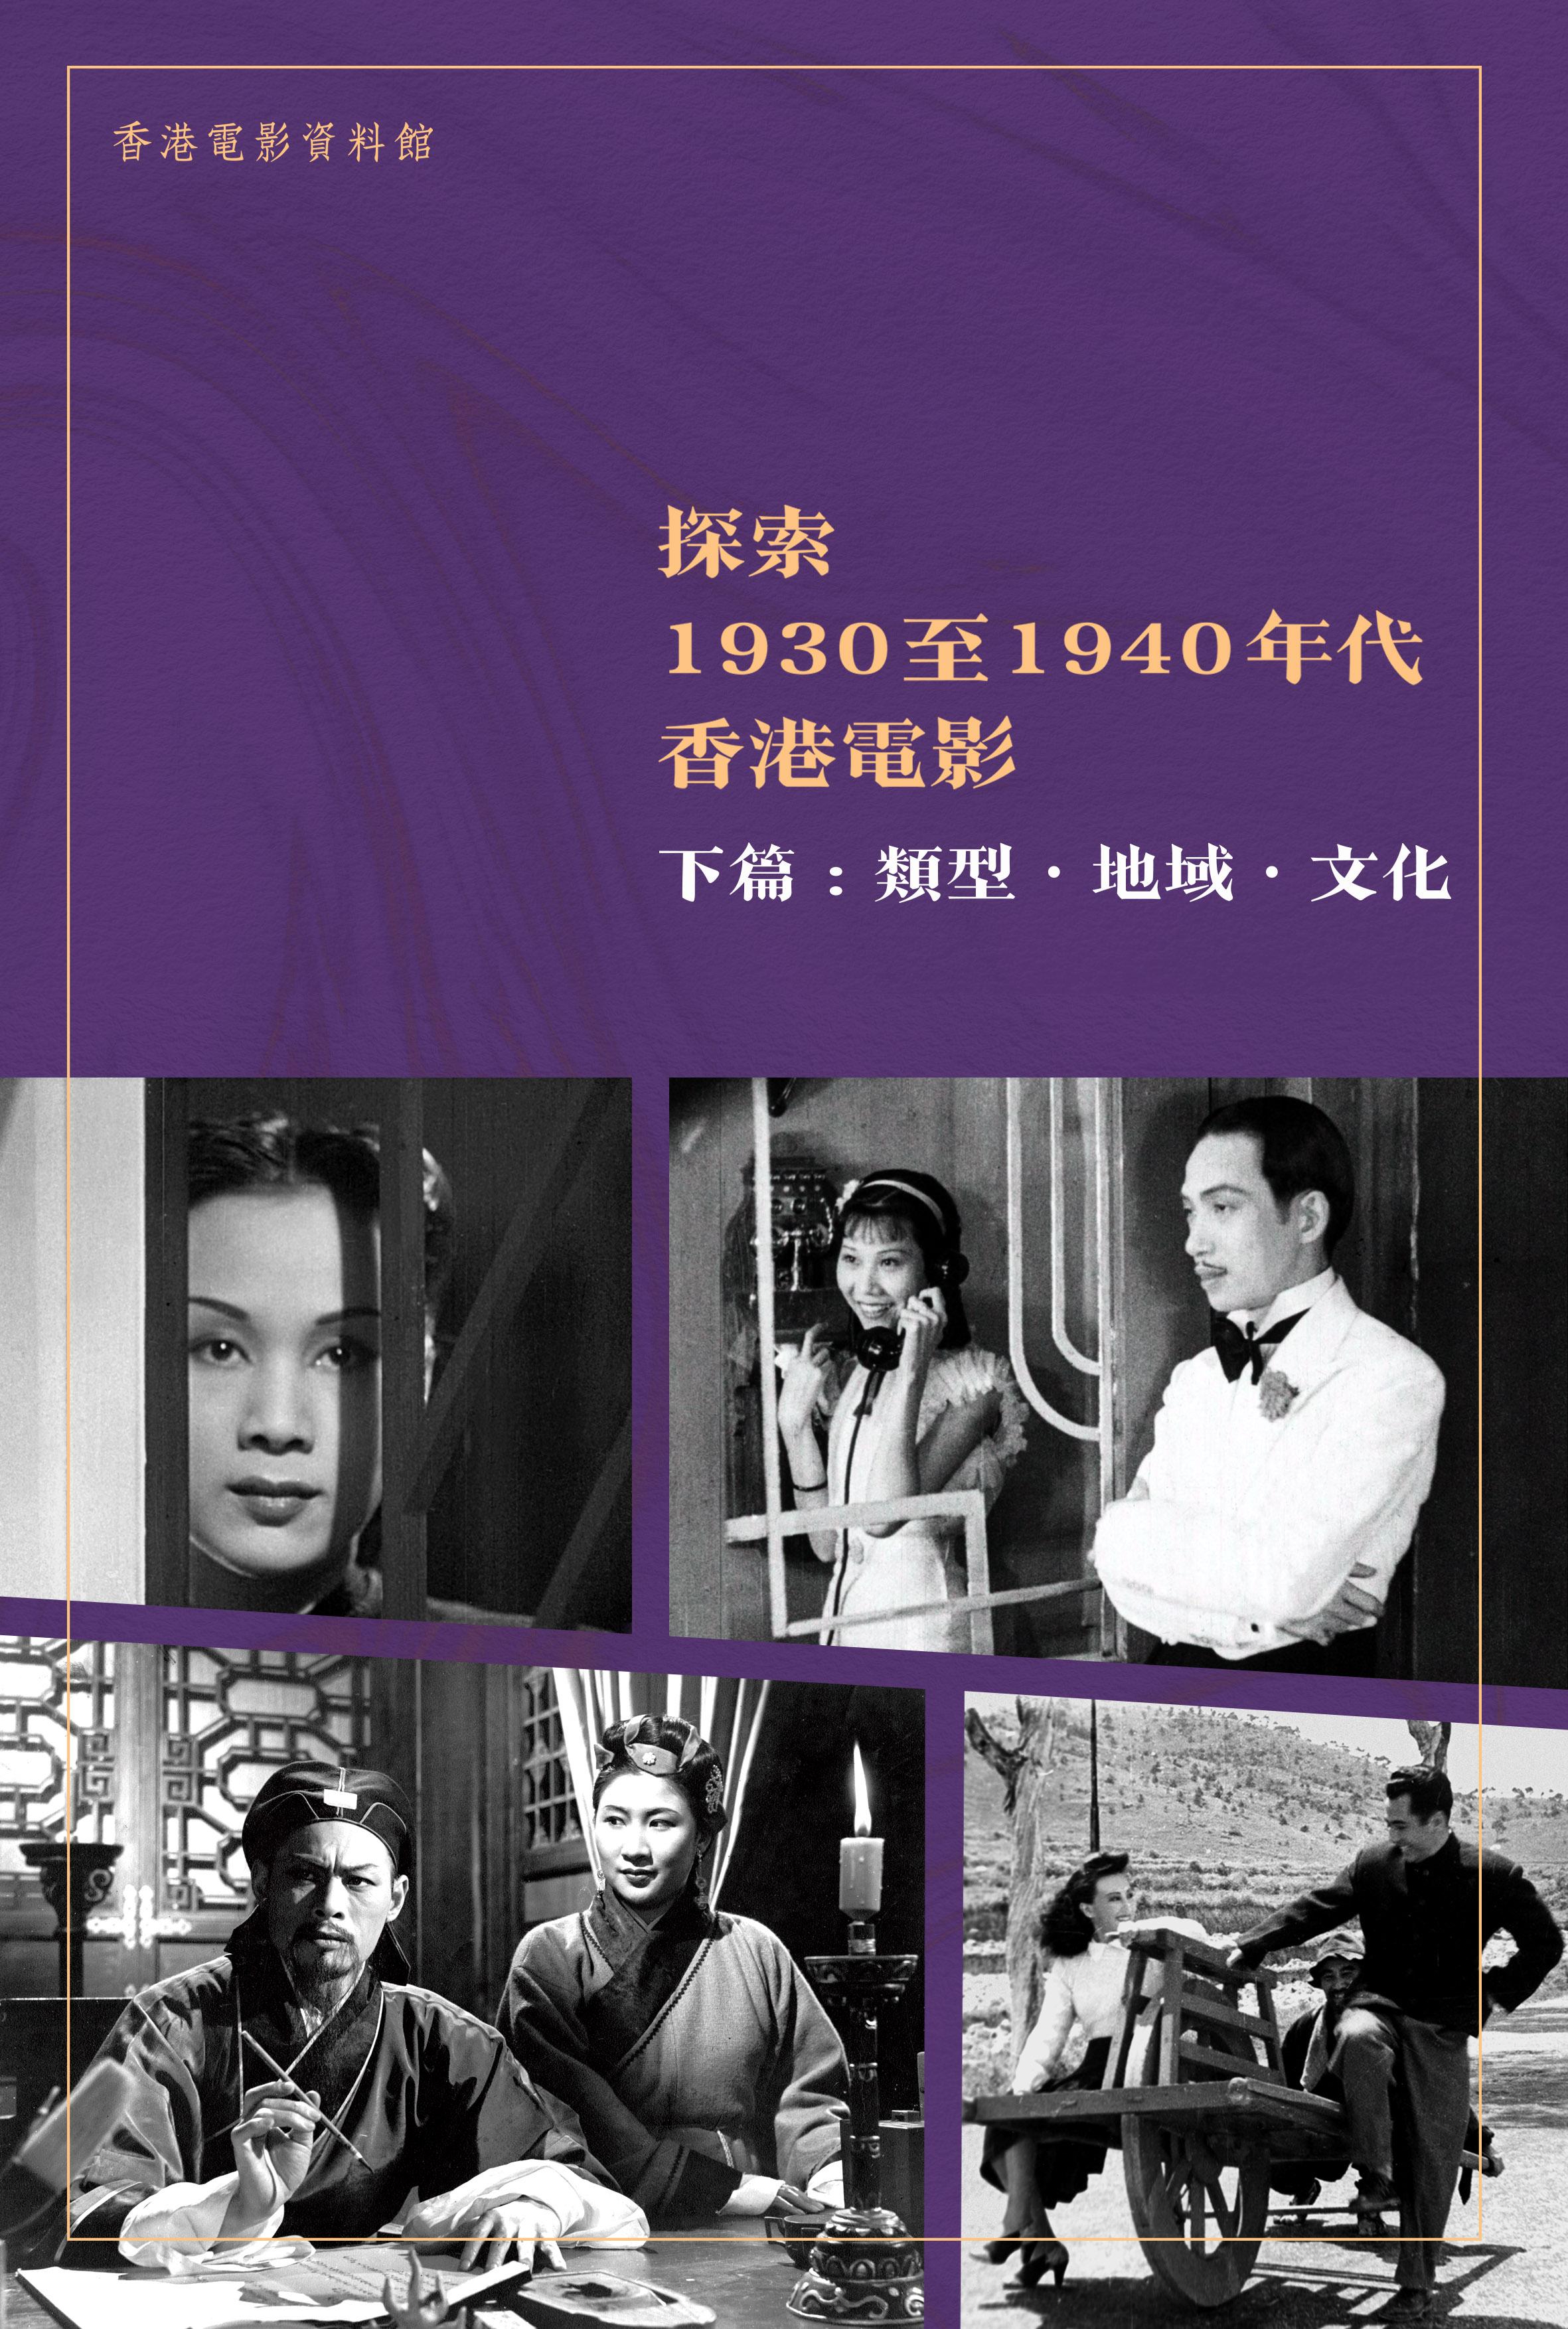 由康乐及文化事务署香港电影资料馆编制的电子书《探索1930至1940年代香港电影》现已出版，供市民免费下载。《探索1930至1940年代香港电影》下篇「类型．地域．文化」透过不同类型的电影，分析当中的艺术和文化价值，侧影此时期香港电影的发展潜力。